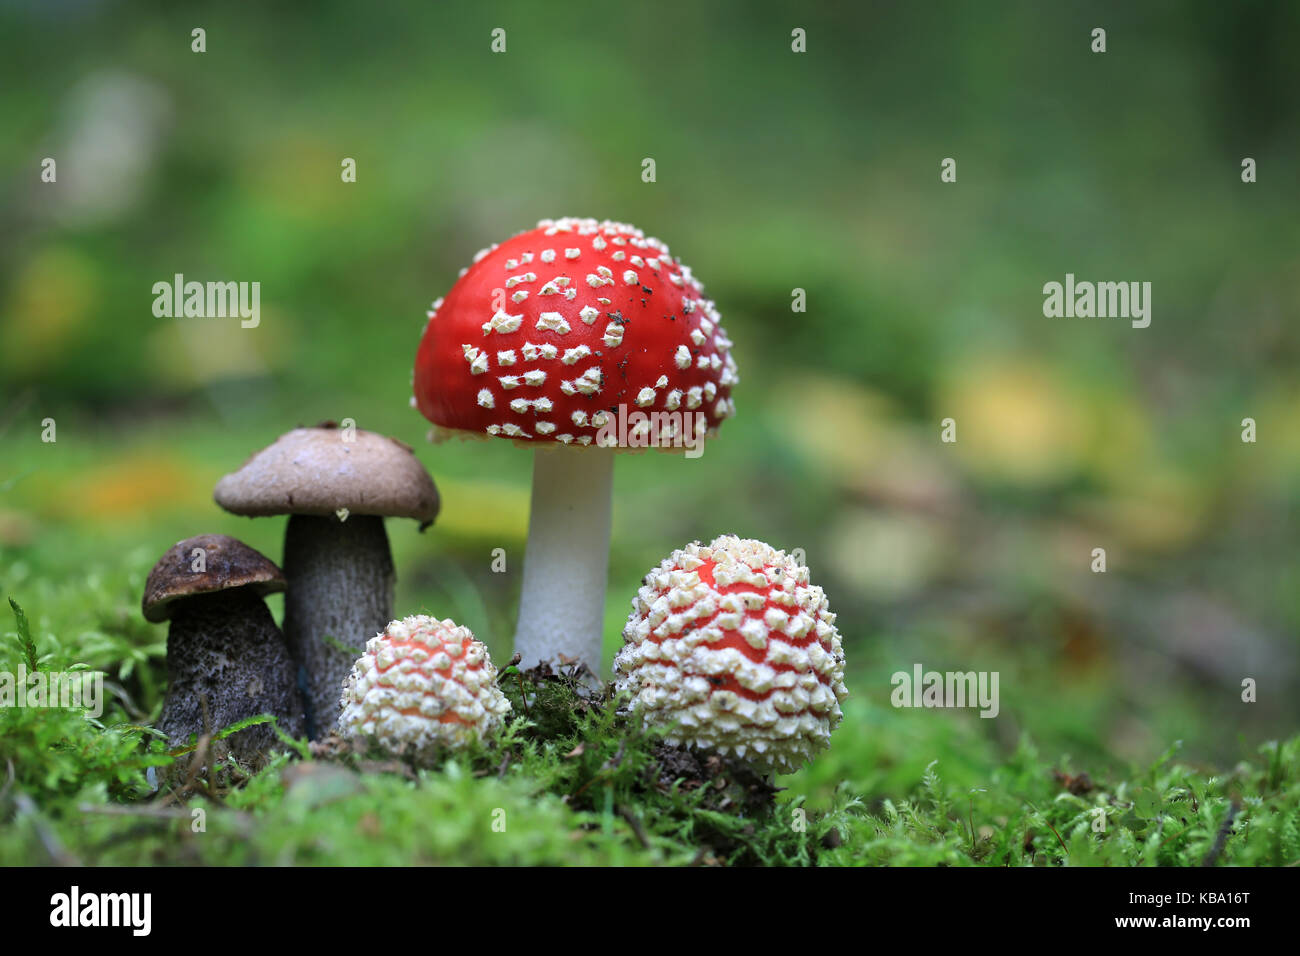 Velenoso amanita muscaria e commestibile tappo marrone boletus hat i funghi di bosco Foto Stock